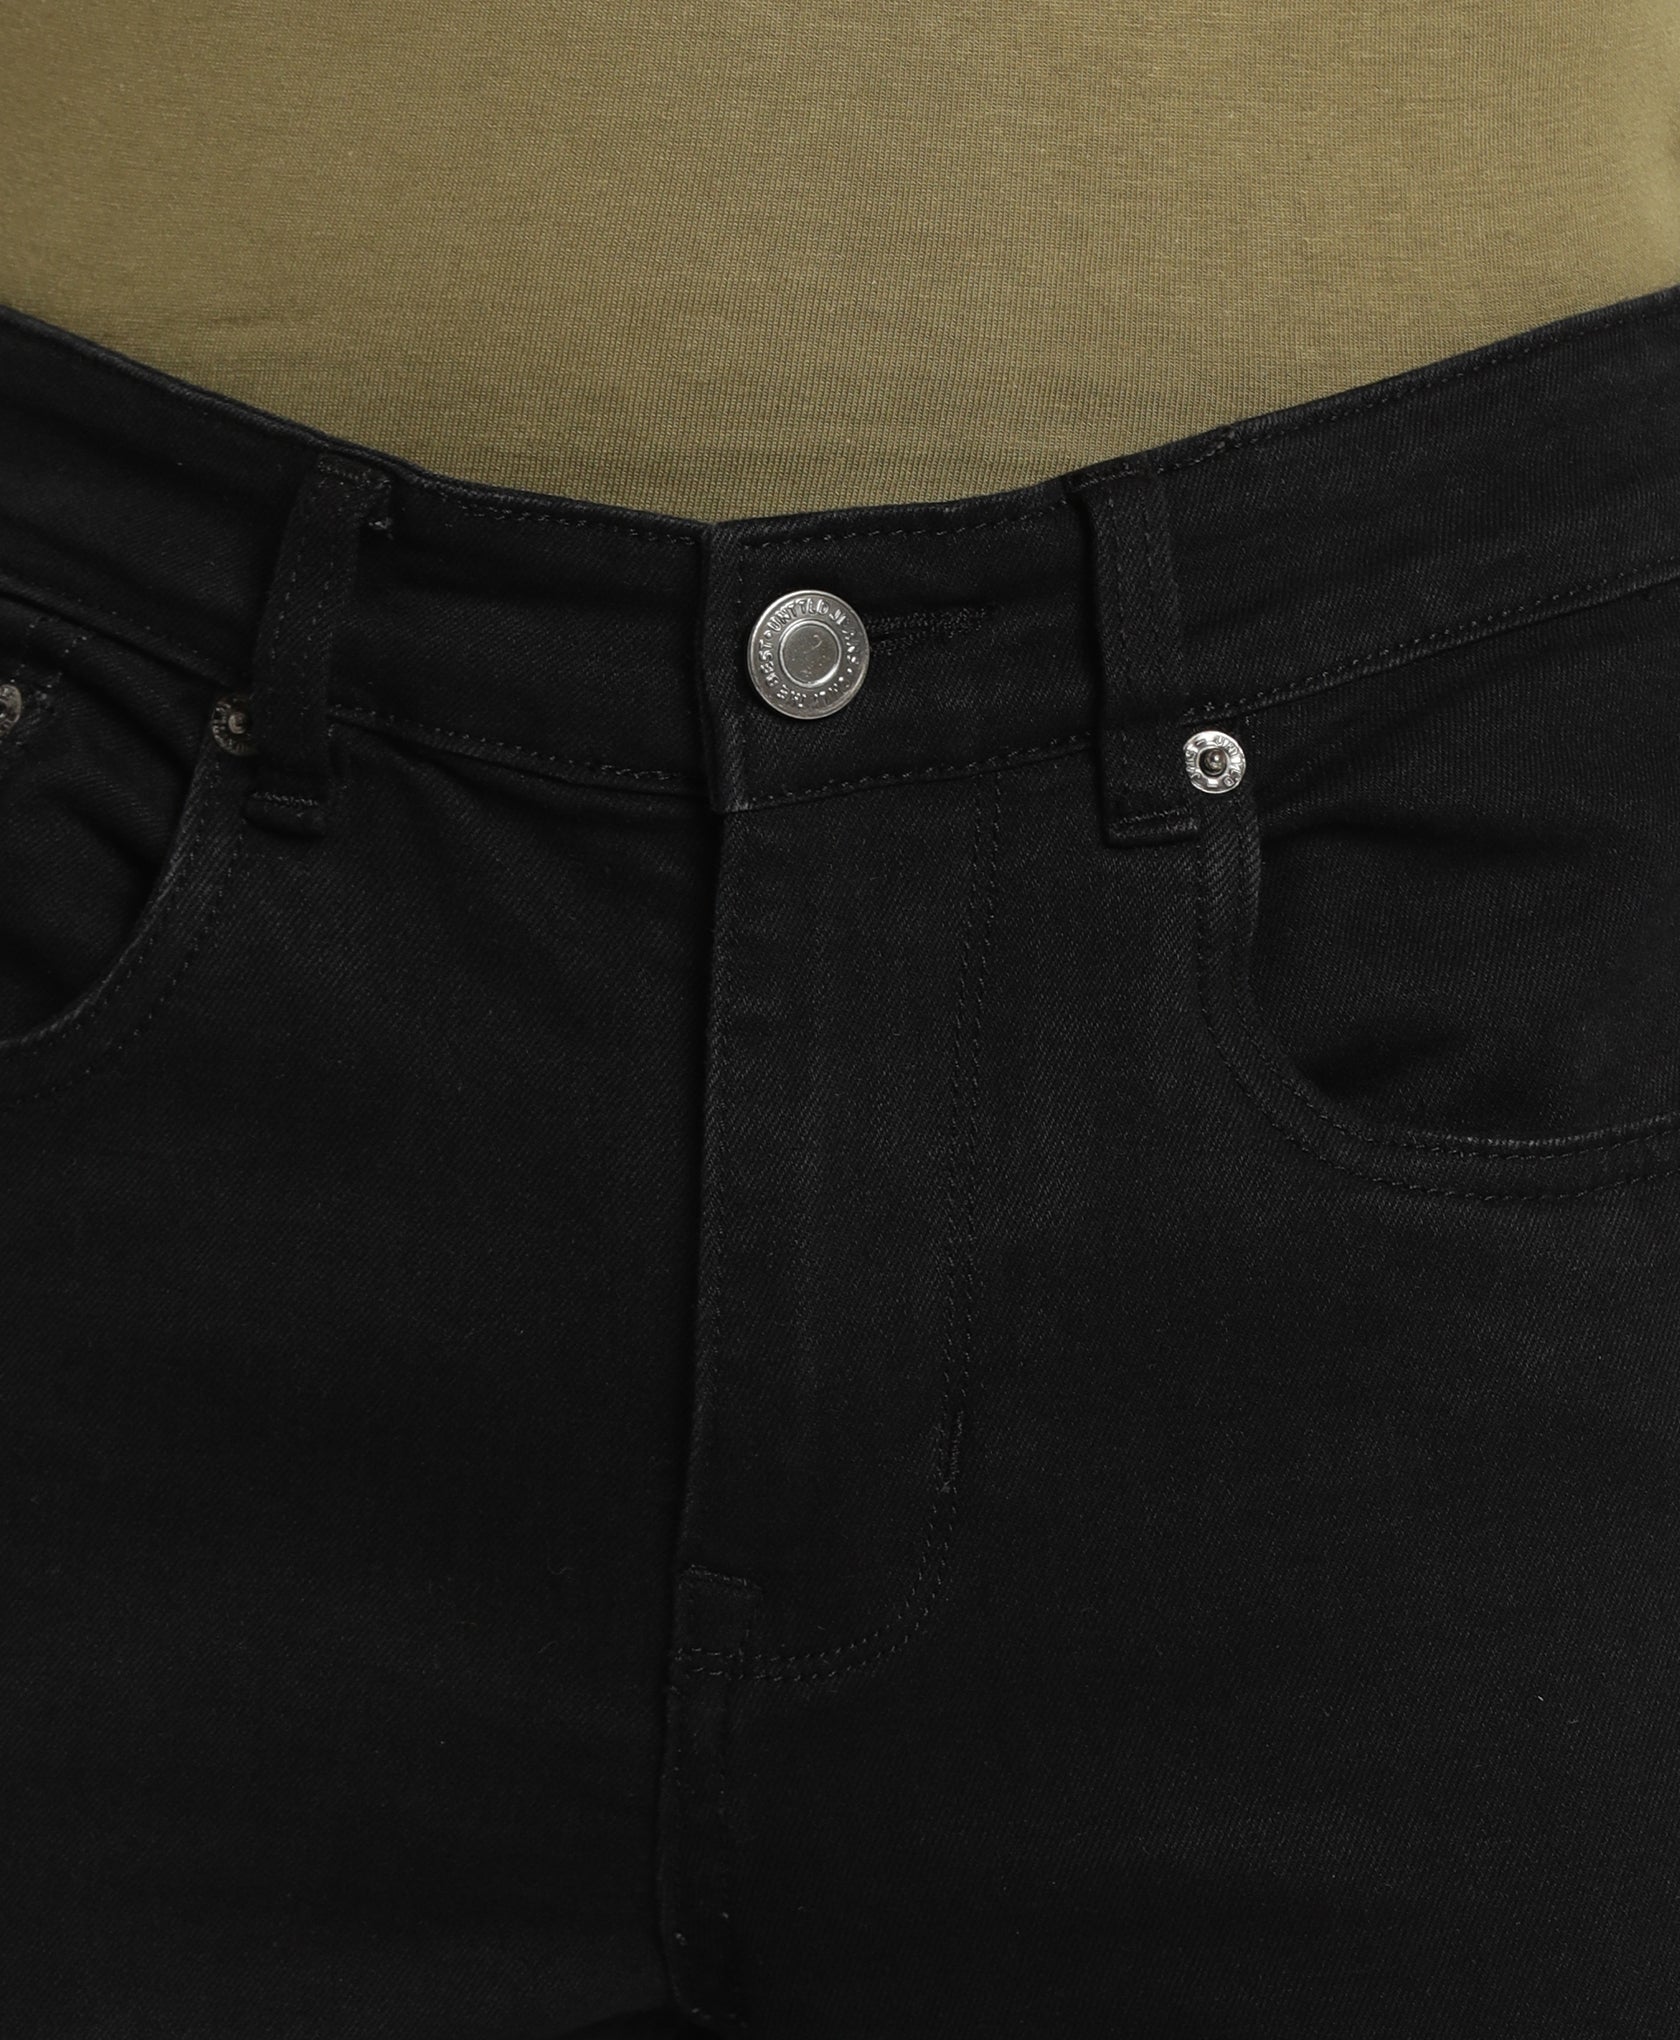 Black Slim-fit Jeans for Men 